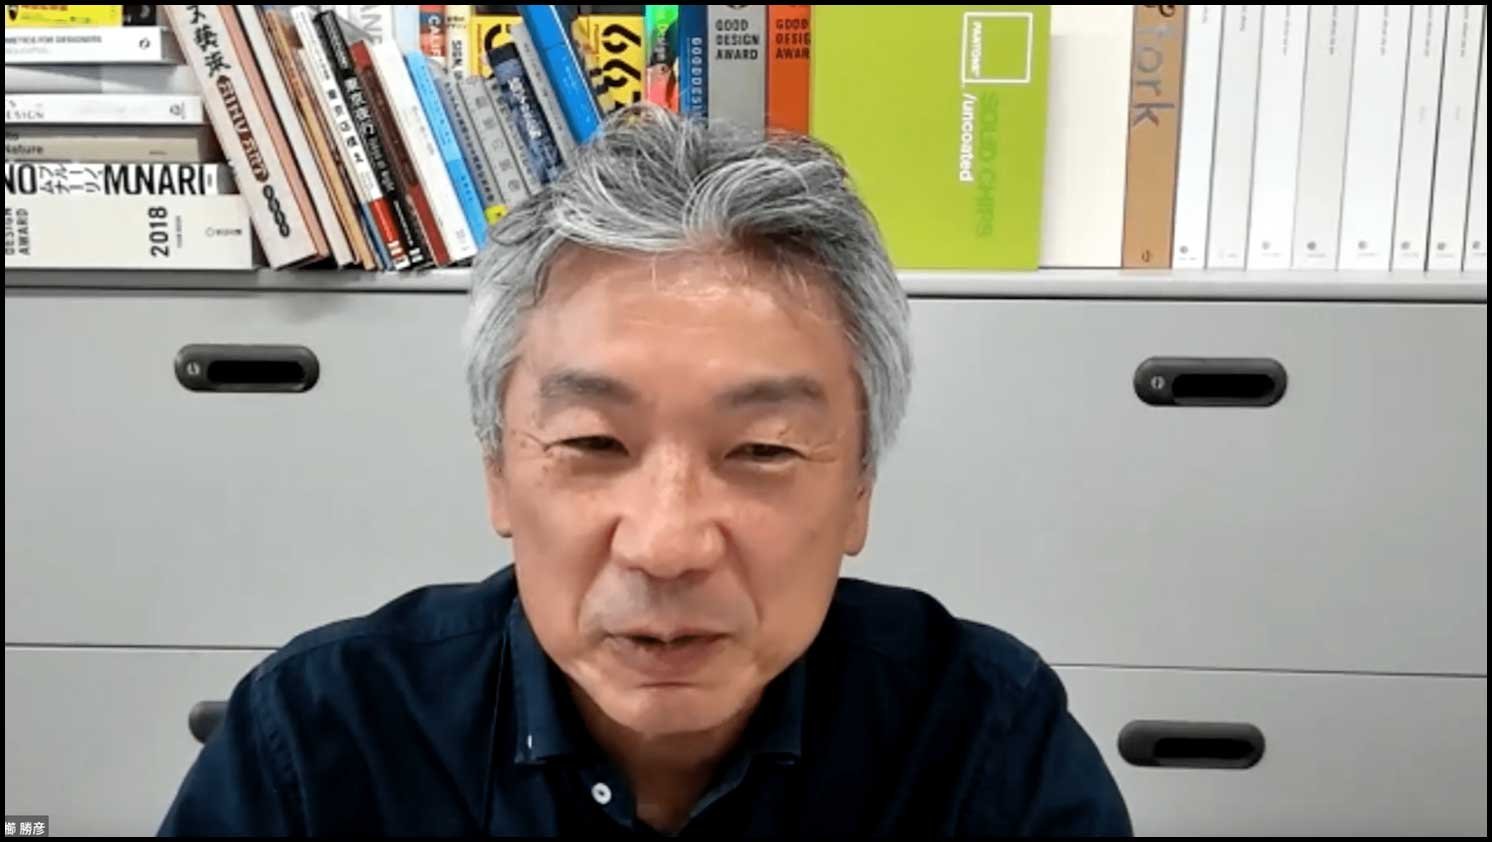 京都工芸繊維大学の教授として、デザイン・建築学を教える櫛 勝彦氏 | Make New Magazine「未来の定番」をつくるために、パナソニックのリアルな姿を伝えるメディア